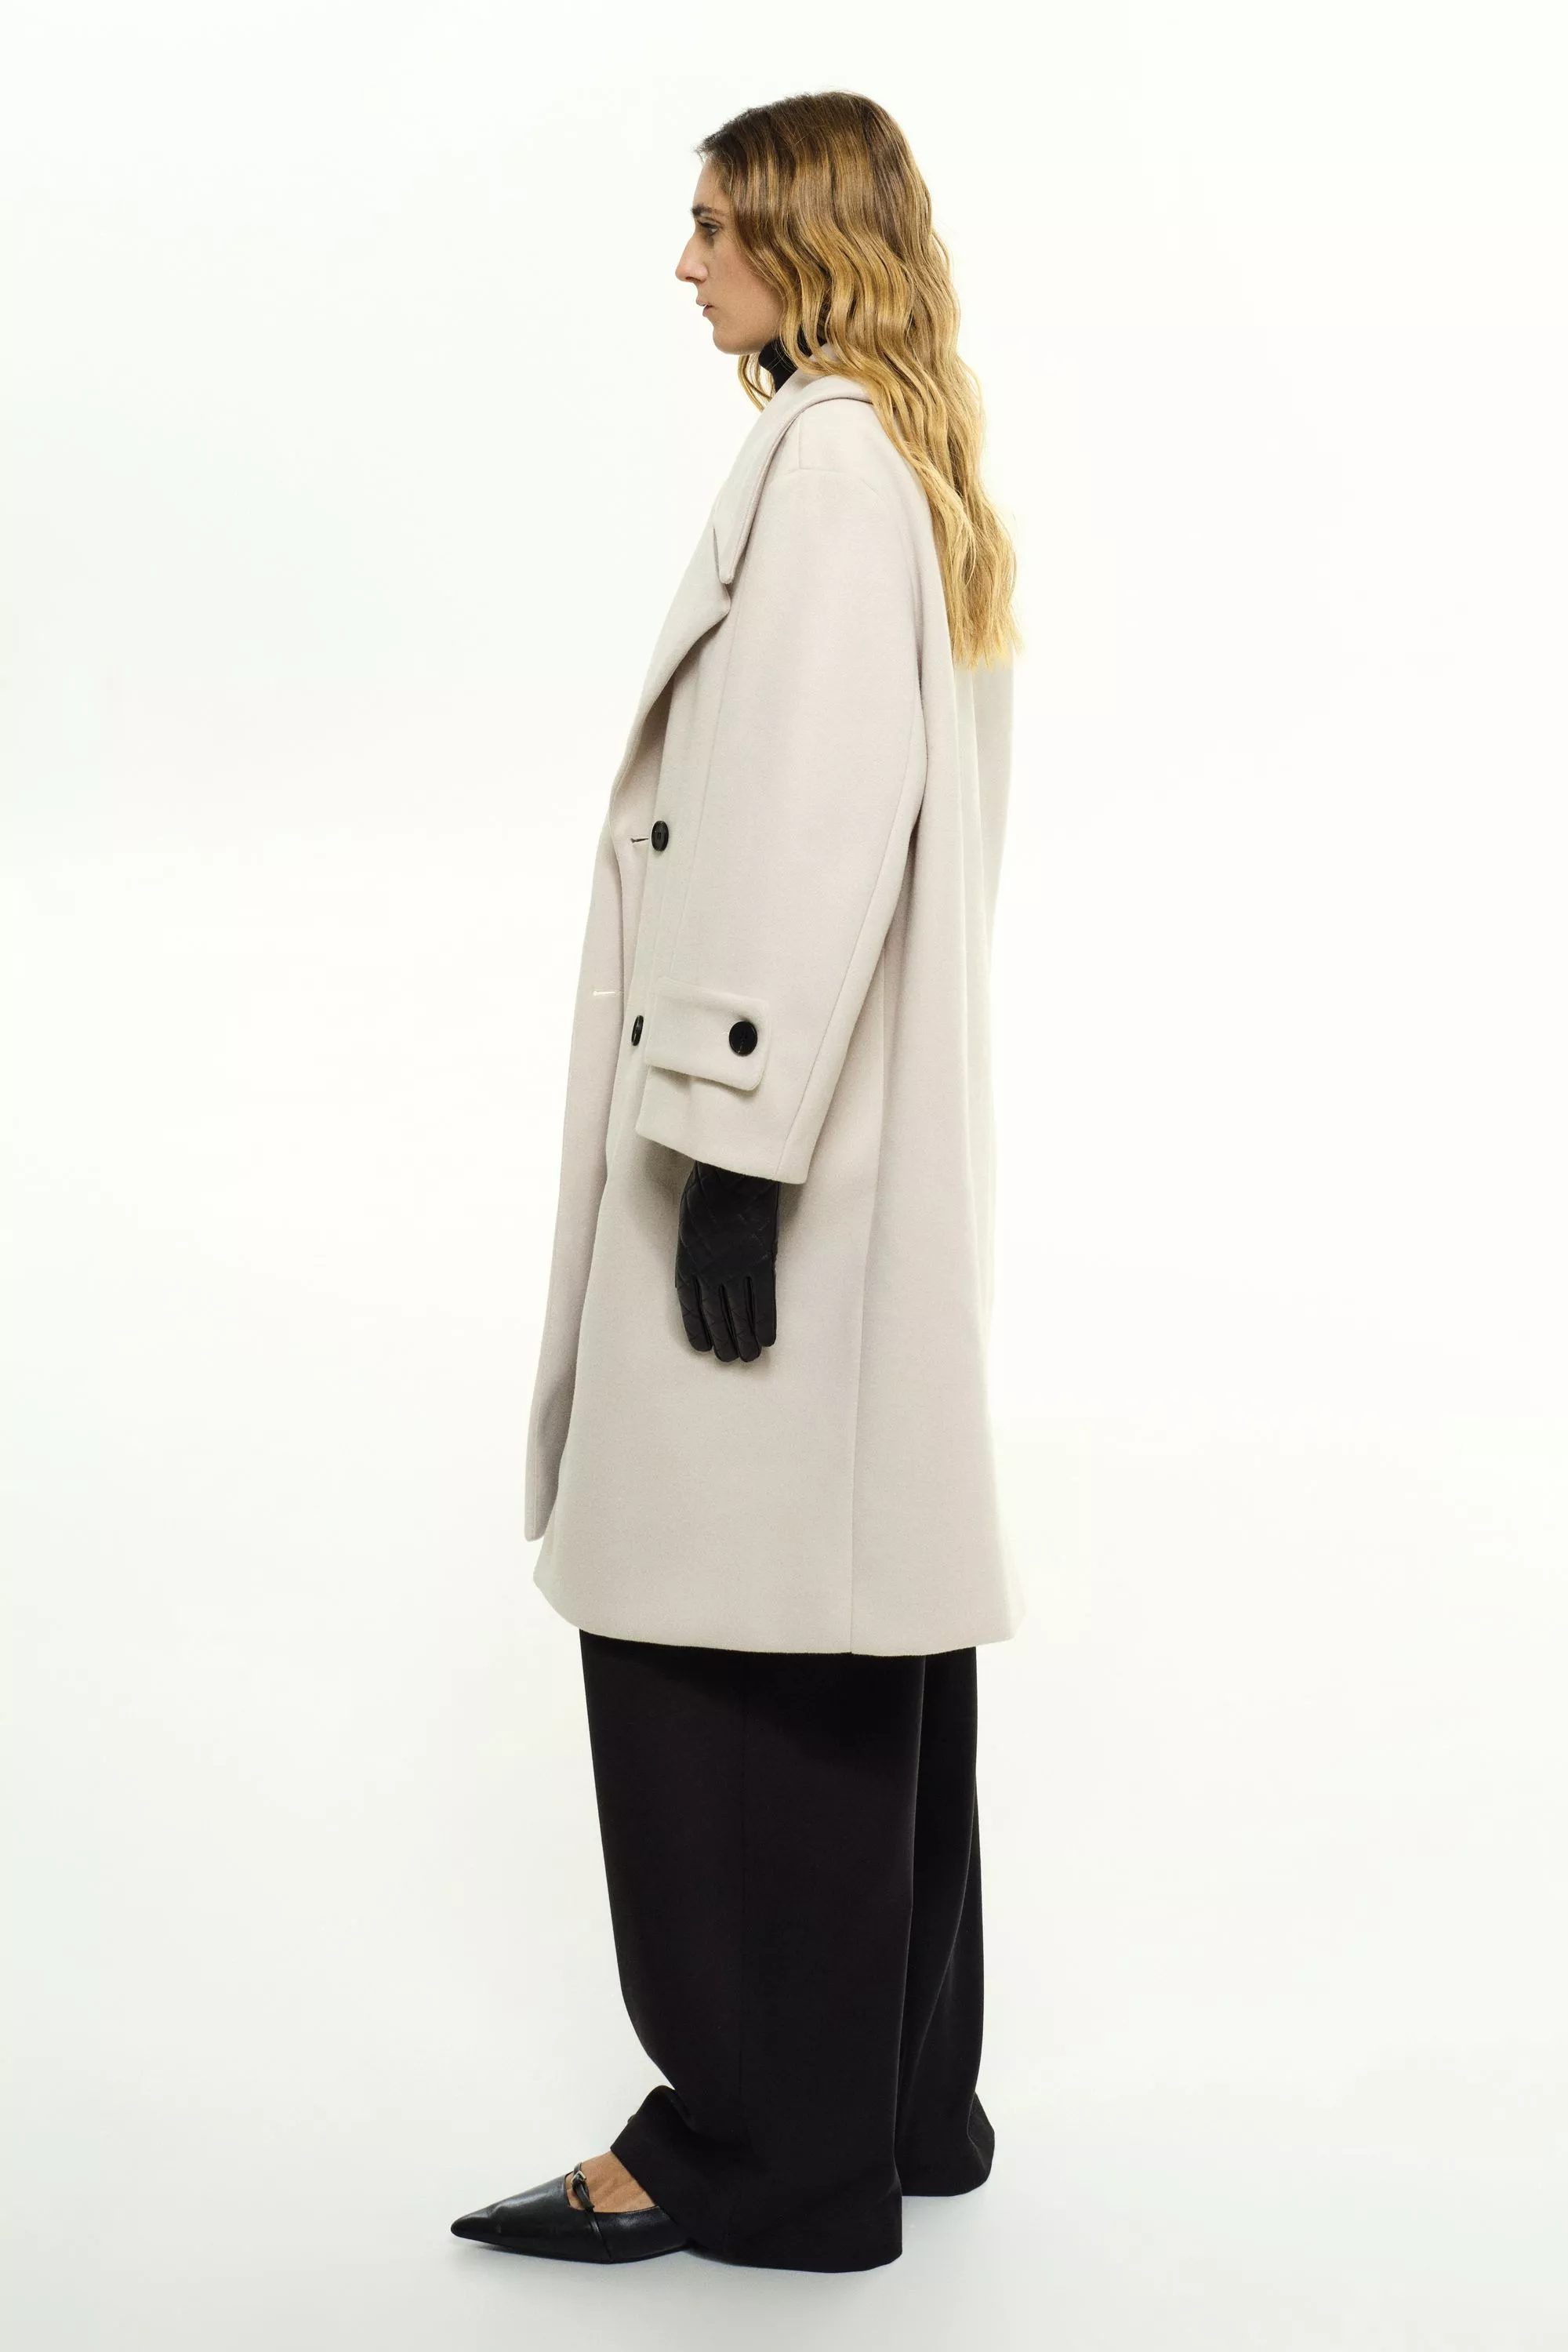 Damen Zweireihiger Mantel in Weiß von Ricano, Seitenansicht am Model